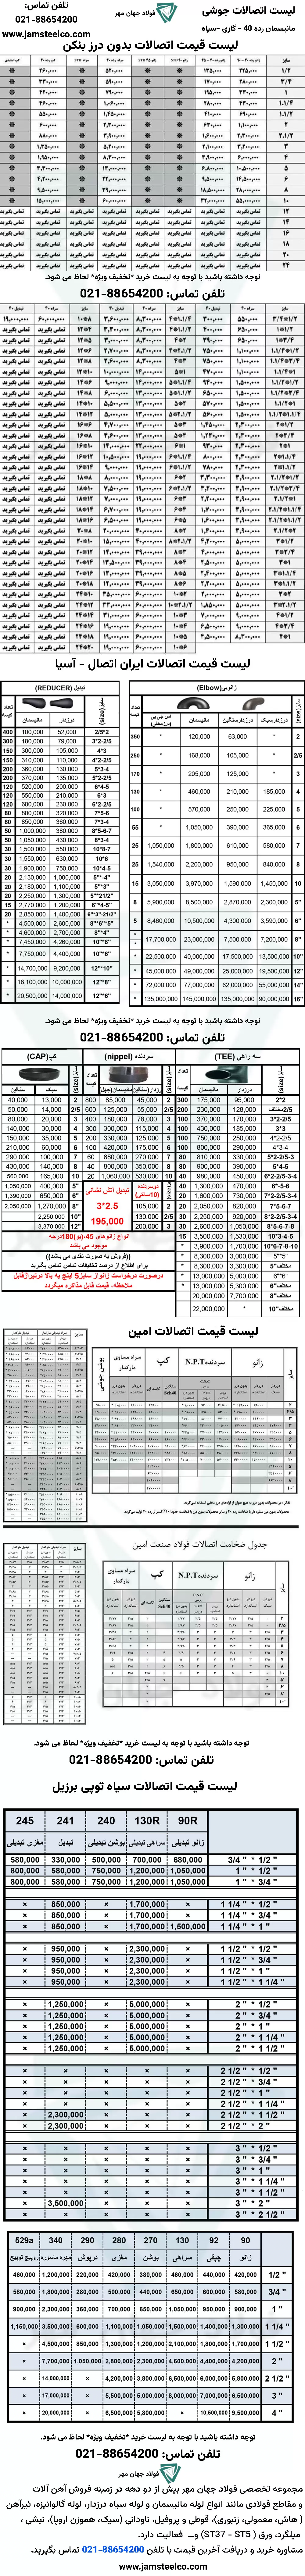 لیست قیمت اتصالات جوشی مانیسمان رده 40 و سیاه درزدار و گازی